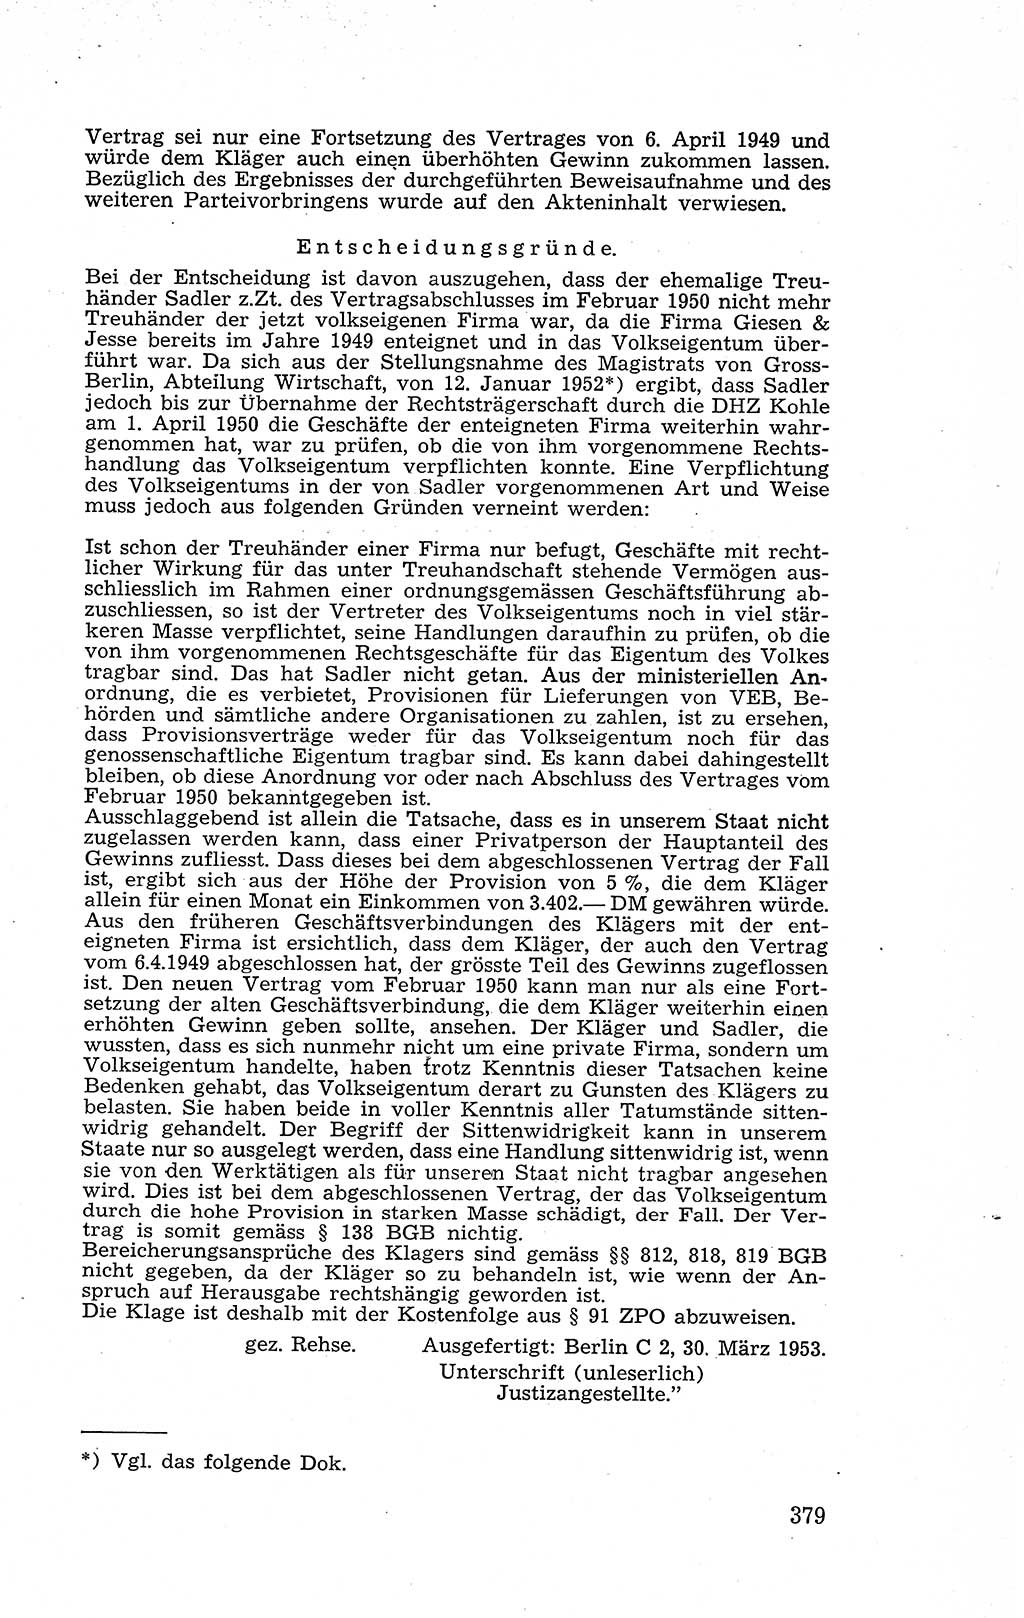 Recht in Fesseln, Dokumente, Internationale Juristen-Kommission [Bundesrepublik Deutschland (BRD)] 1955, Seite 379 (R. Dok. IJK BRD 1955, S. 379)